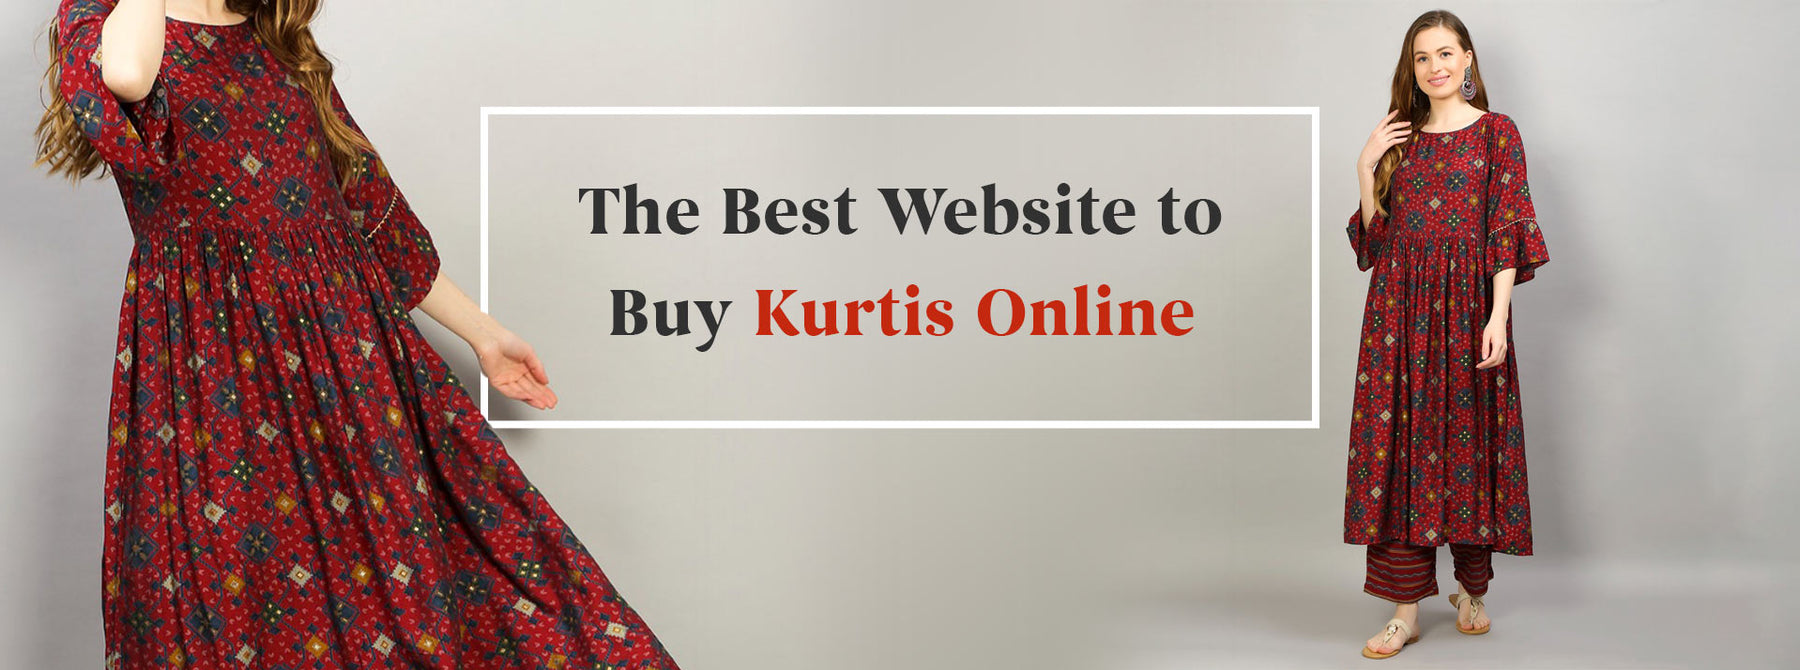 The Best Website to Buy Kurtis Online